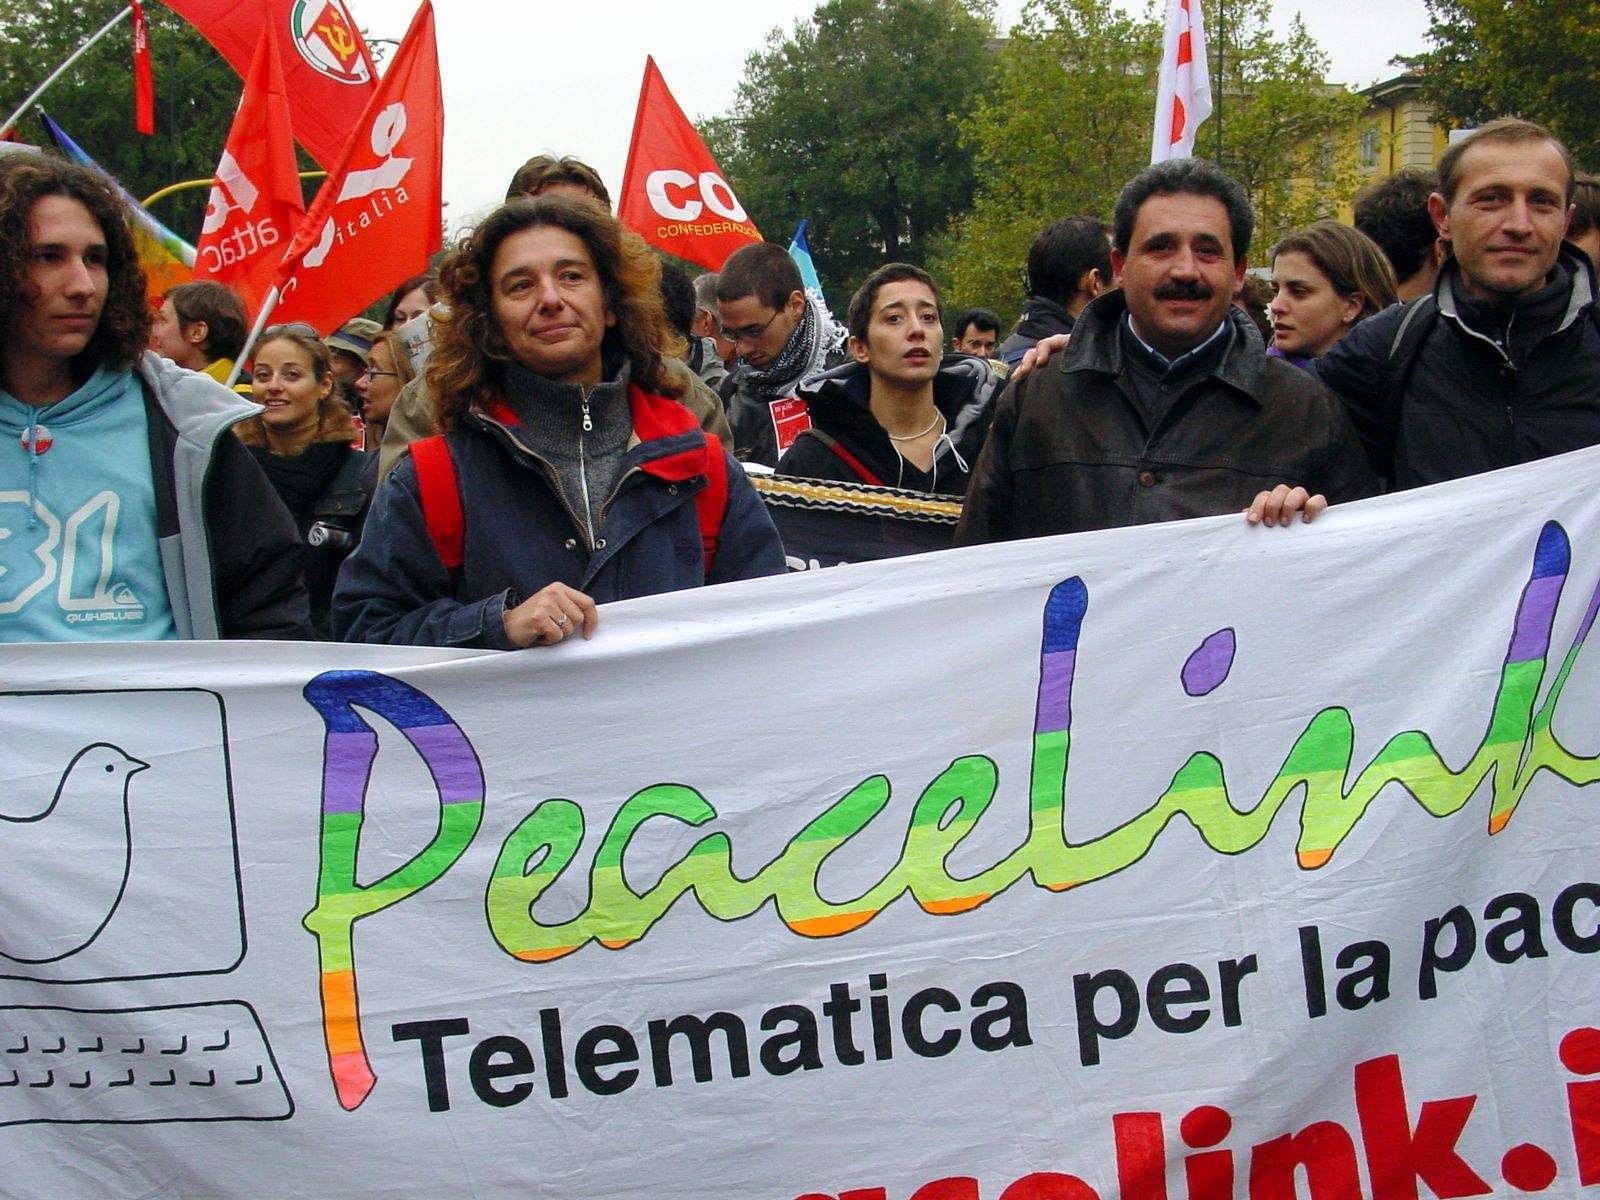 PeaceLink al Social Forum Europeo di Firenze